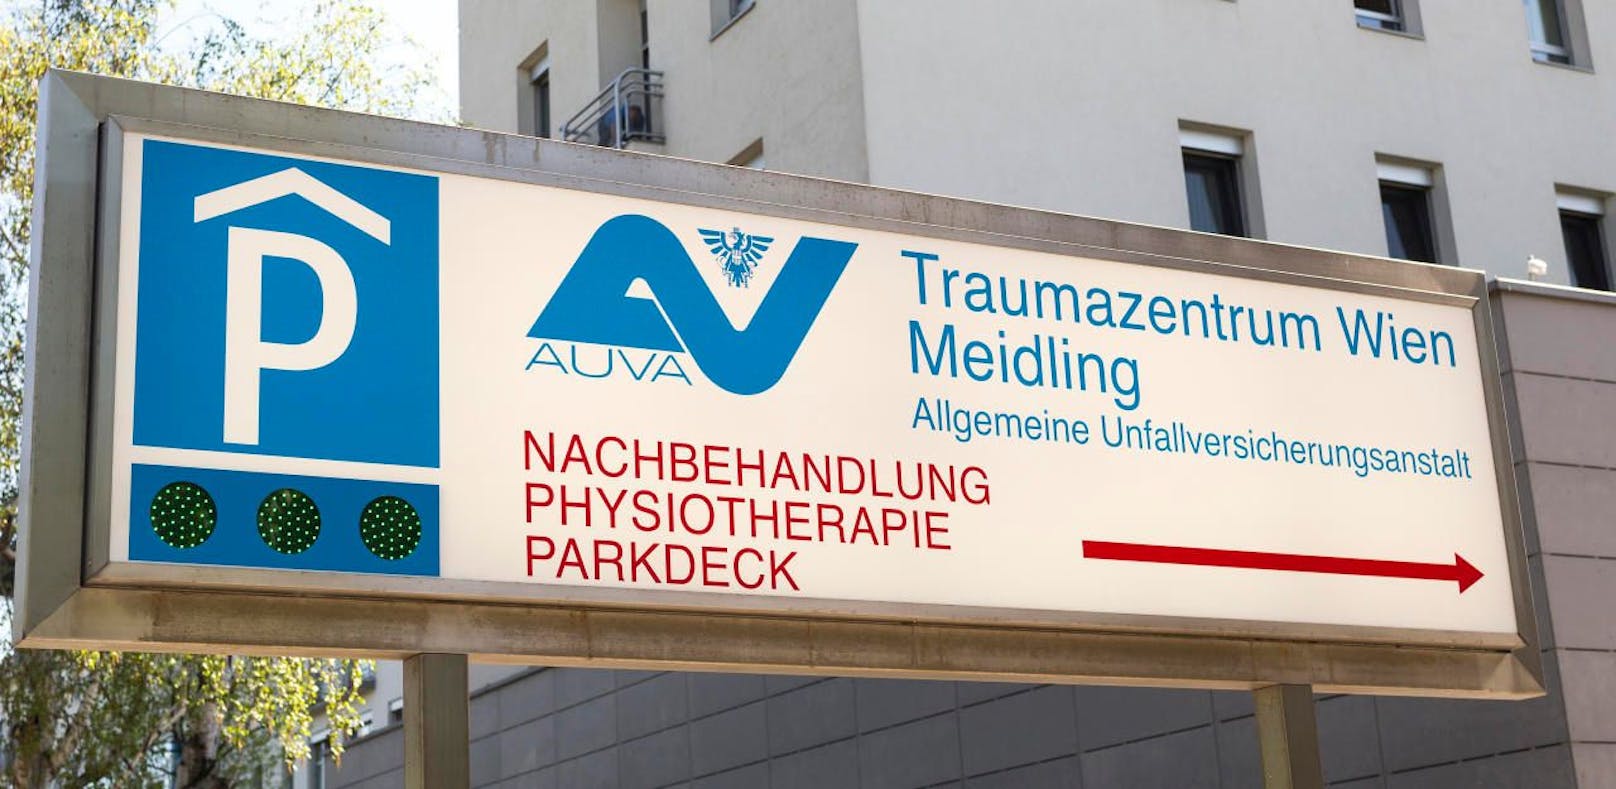 Der Verletzte wurde ins Unfallkrankenhaus Meidling gebracht.